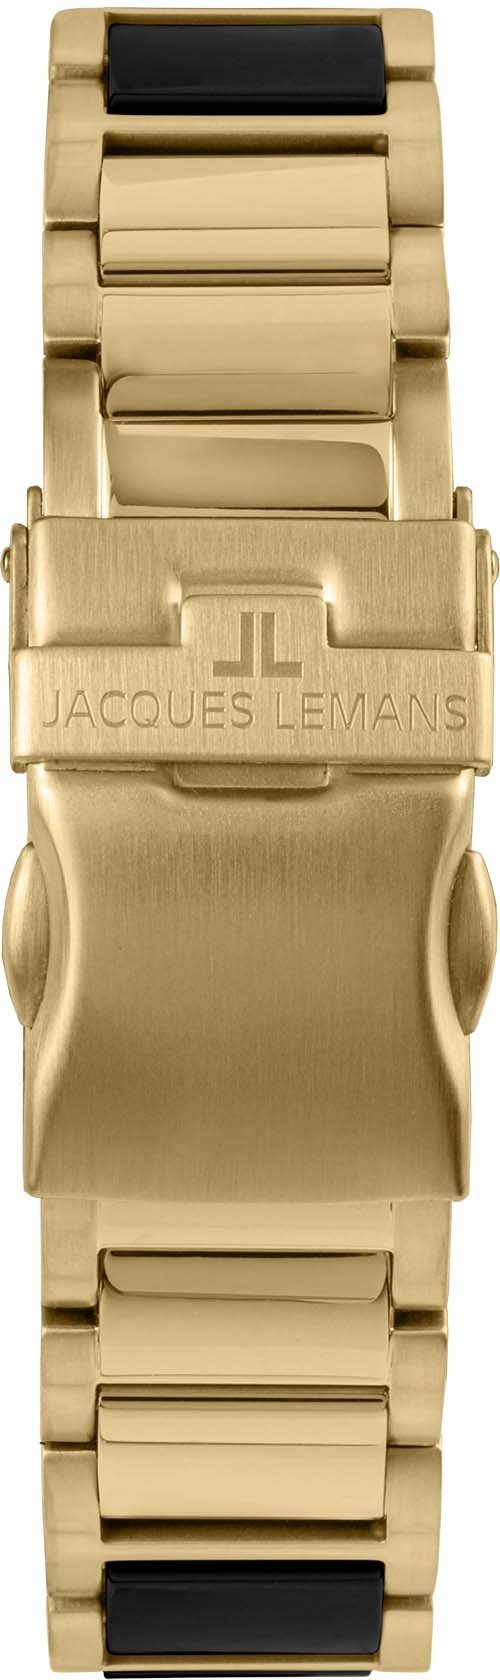 Keramikuhr Liverpool, Jacques Lemans 42-10G